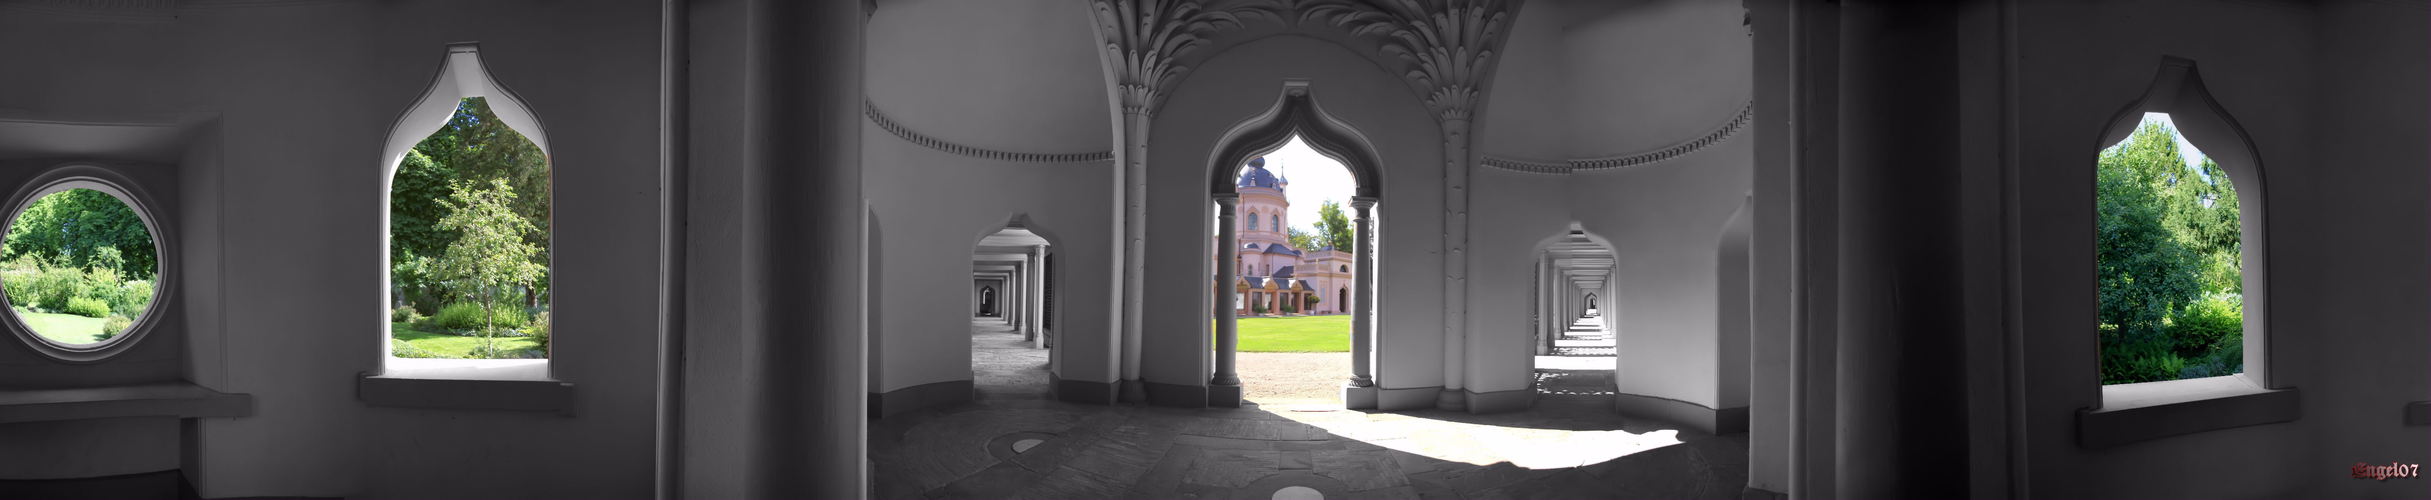 Moschee im Schwetzinger Schlossgarten eine andere Welt